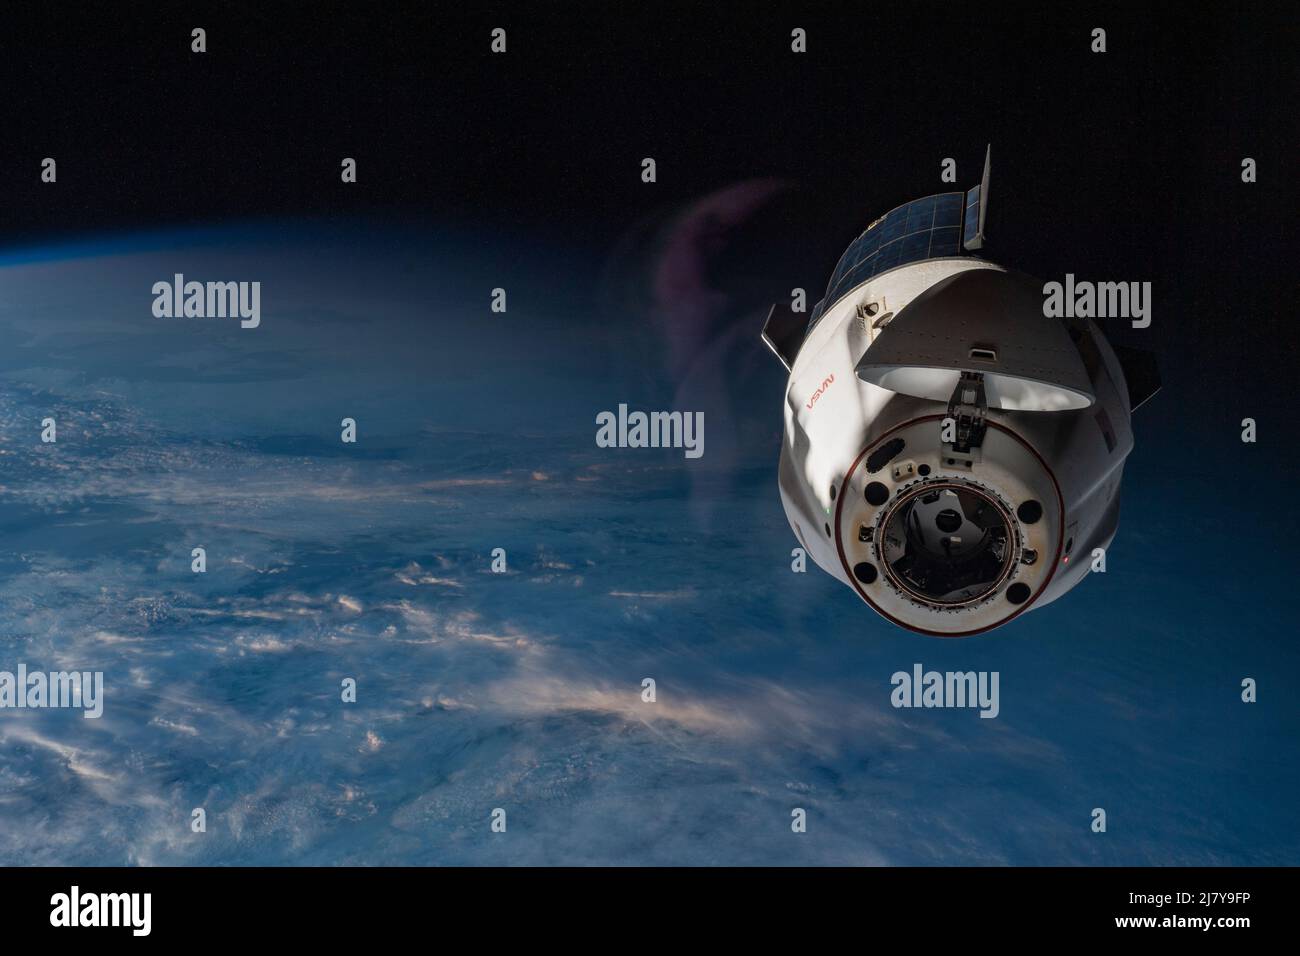 Le vaisseau d'équipage SpaceX Dragon Endurance, transportant quatre astronautes Crew-3 vers la Terre, est vu depuis une fenêtre sur la Station spatiale internationale après le désancrage du module Harmony à l'avant du port le 5 mai 2022 à Earth Orbit. Le commandant Raja Chari de l'équipage-3, le pilote dirigé Tom Marshburn et les spécialistes de mission Kayla Barron et Matthias Maurer retournent sur terre à bord de la capsule. Banque D'Images